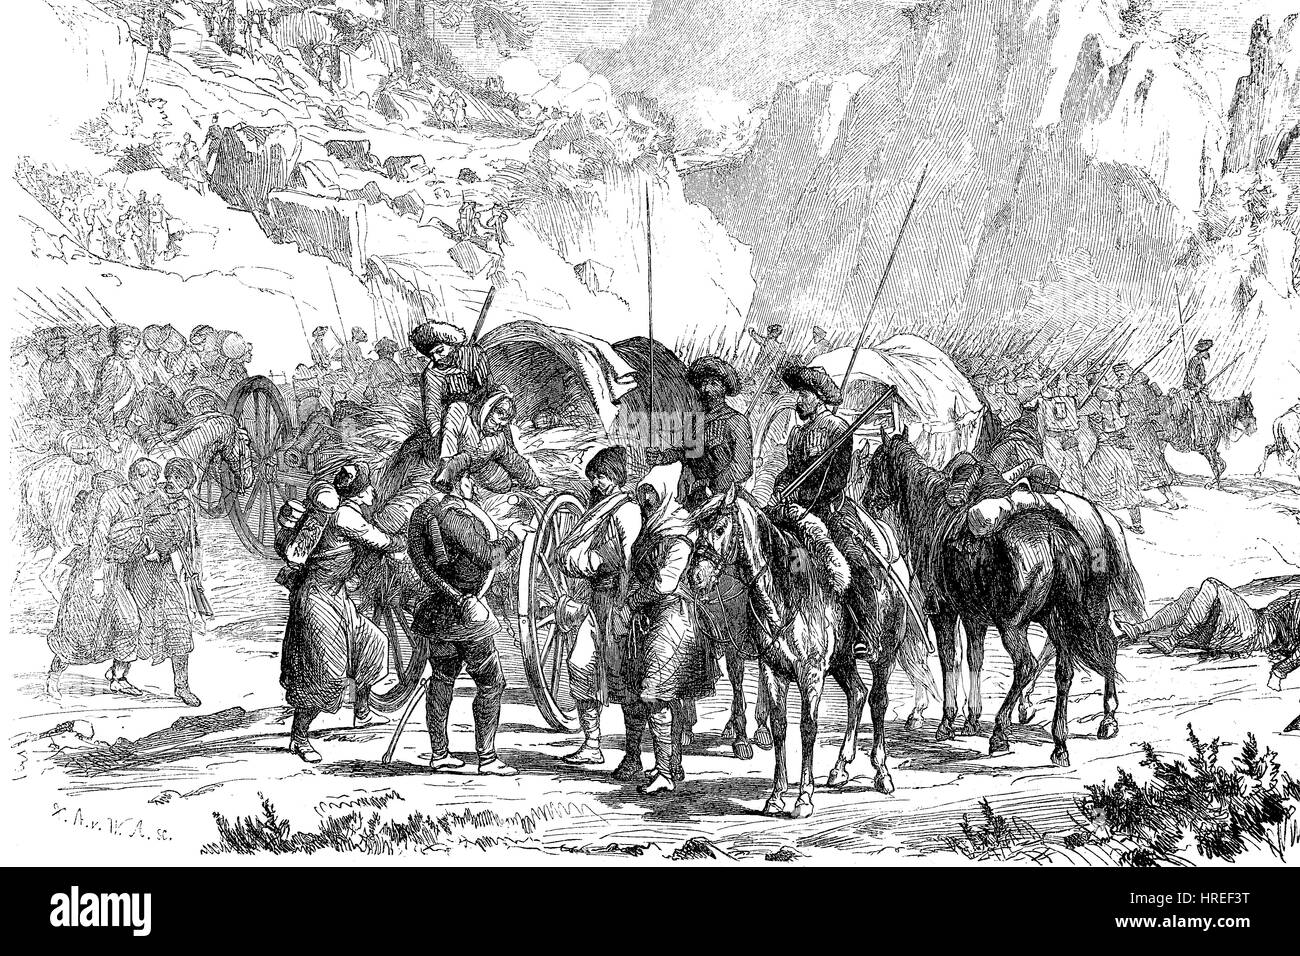 Szene aus dem Russisch - Circassian Krieg, The Caucasian von 1817-1864 war eine Invasion des Kaukasus durch das russische Reich führte in der russischen Annexion der Gebiete des Nordkaukasus und die ethnische Säuberung der Tscherkessen, Reproduktion von einem Holzschnitt aus dem 19. Jahrhundert, 1885 Stockfoto